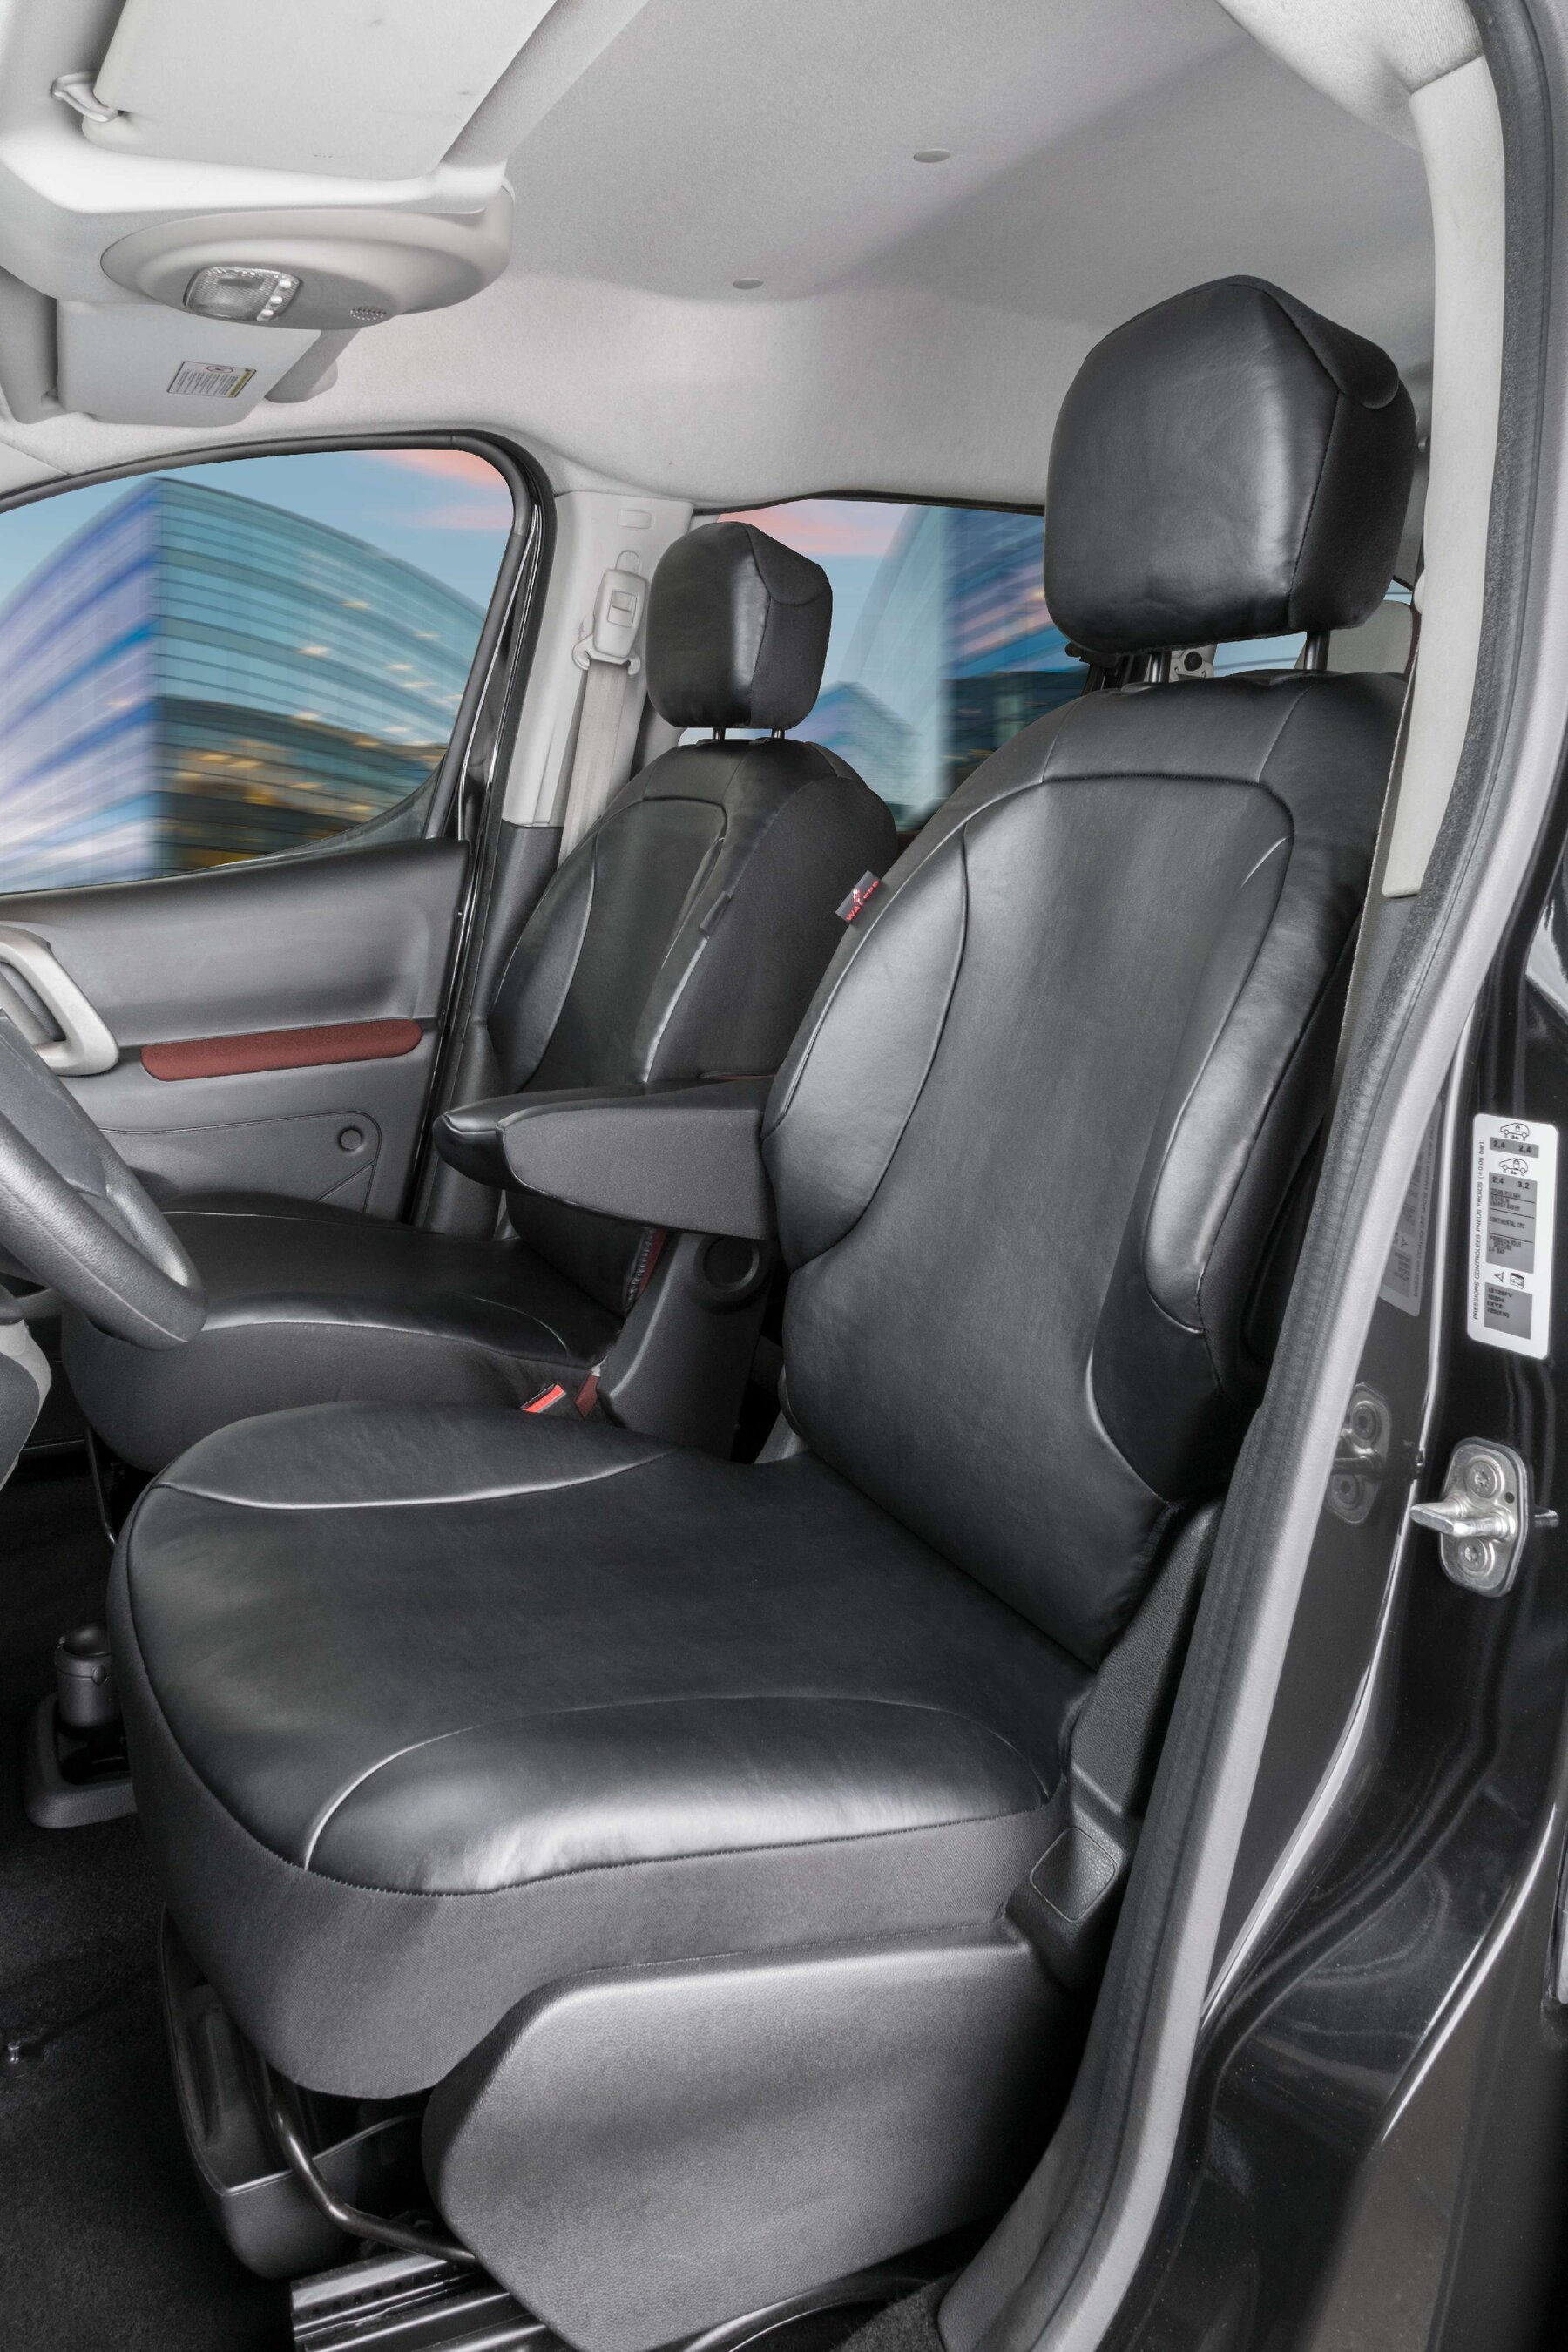 Passform Sitzbezug aus Kunstleder für Peugeot Partner, 2 Einzelsitzbezüge vorne